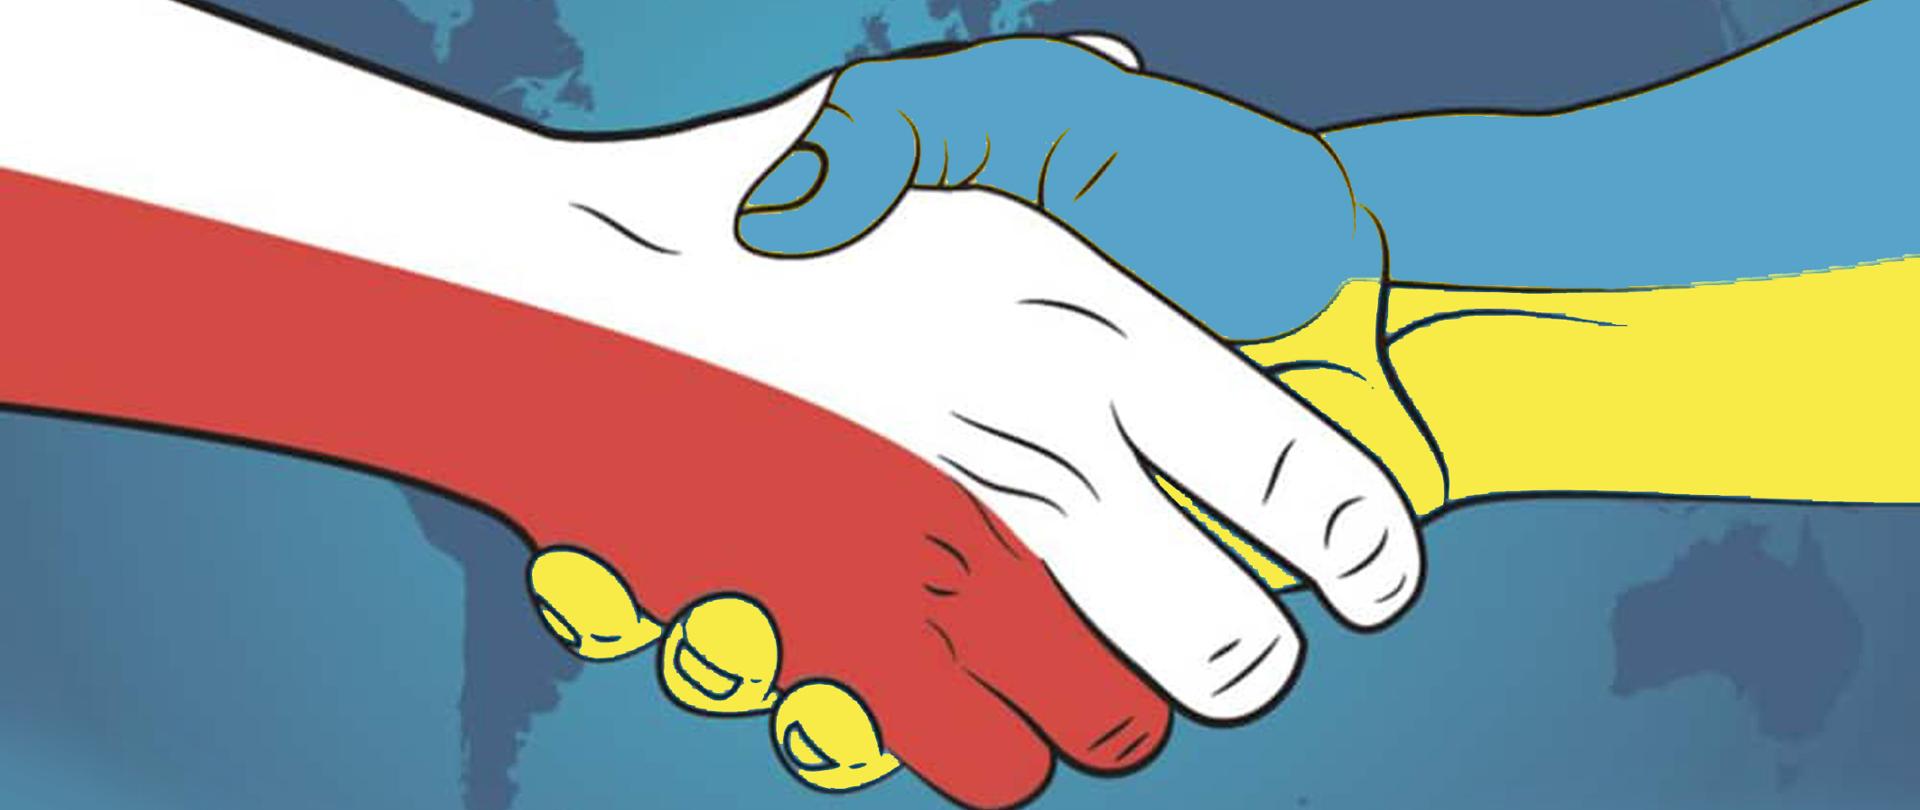 Ilustracja przedstawia sylwetki uściśniętych dłoni w kolorach barw Polski (biało-czerwonych) i Ukrainy (niebiesko-żółtych) oraz treść: 